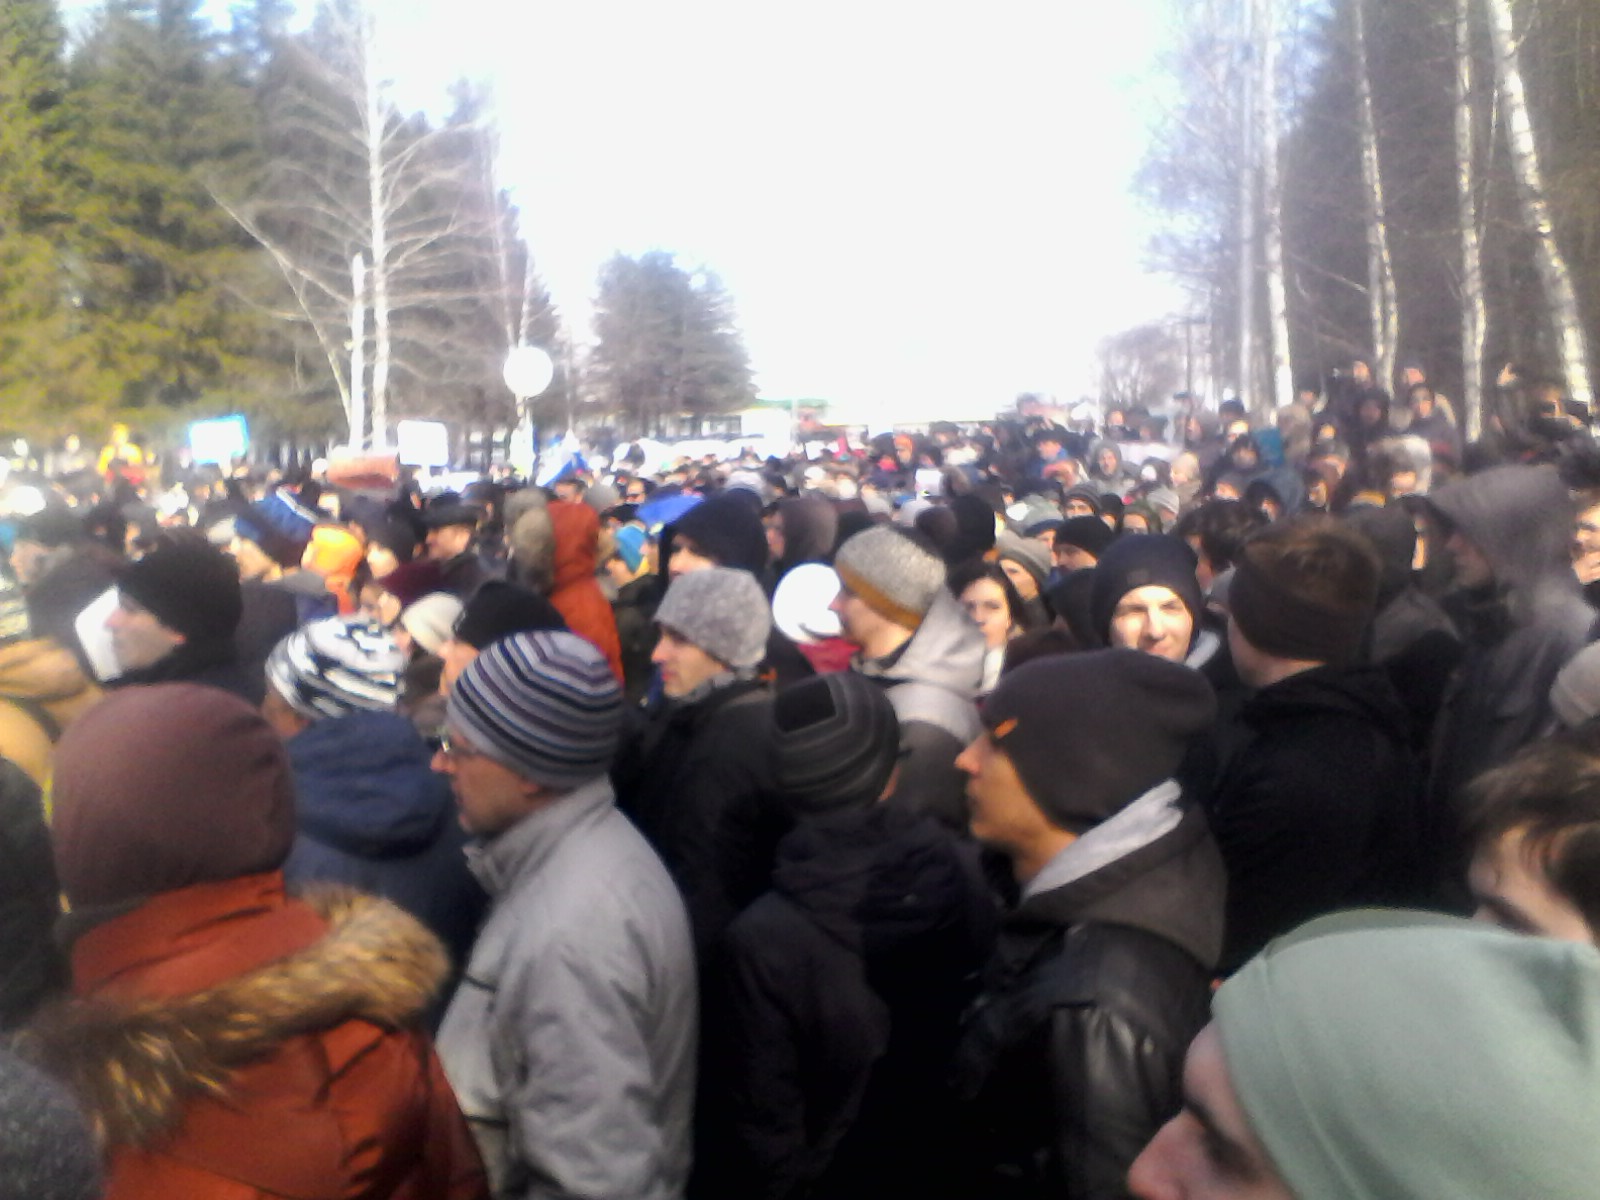 Митинг в г. Уфе по инициативе А. Навального, 26 марта 2017 г.